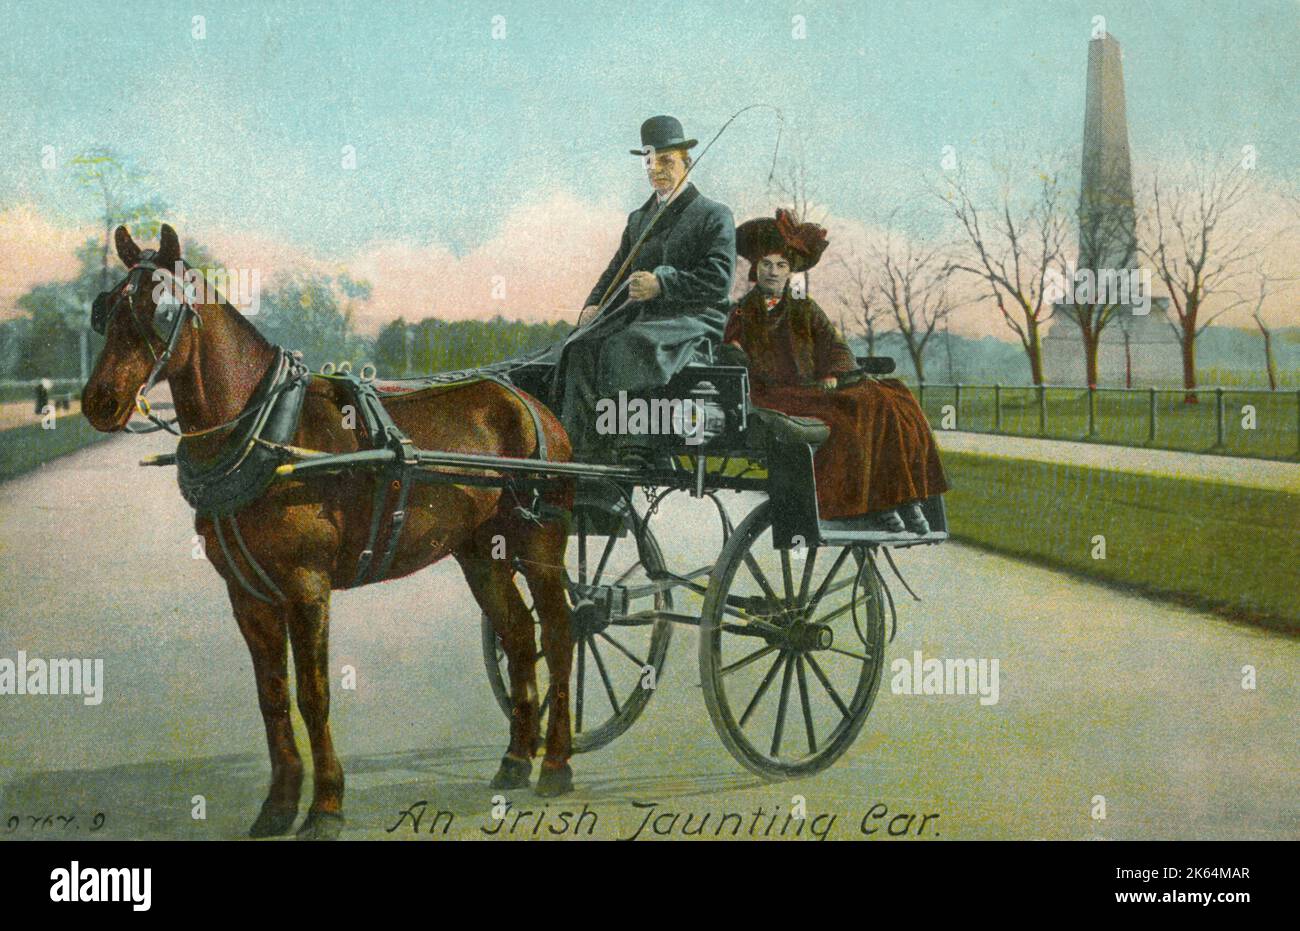 Ein irisches Junkingauto in Phoenix Park, Dublin, Irland. Als leichte, zweirädrige Kutsche für ein Pferd mit einem Sitzplatz vorne für den Fahrer war der Wagen ein beliebtes Transportmittel im Dublin des 19. Jahrhunderts, das von Valentine Vousden in einem Lied mit diesem Namen beliebt wurde. Stockfoto